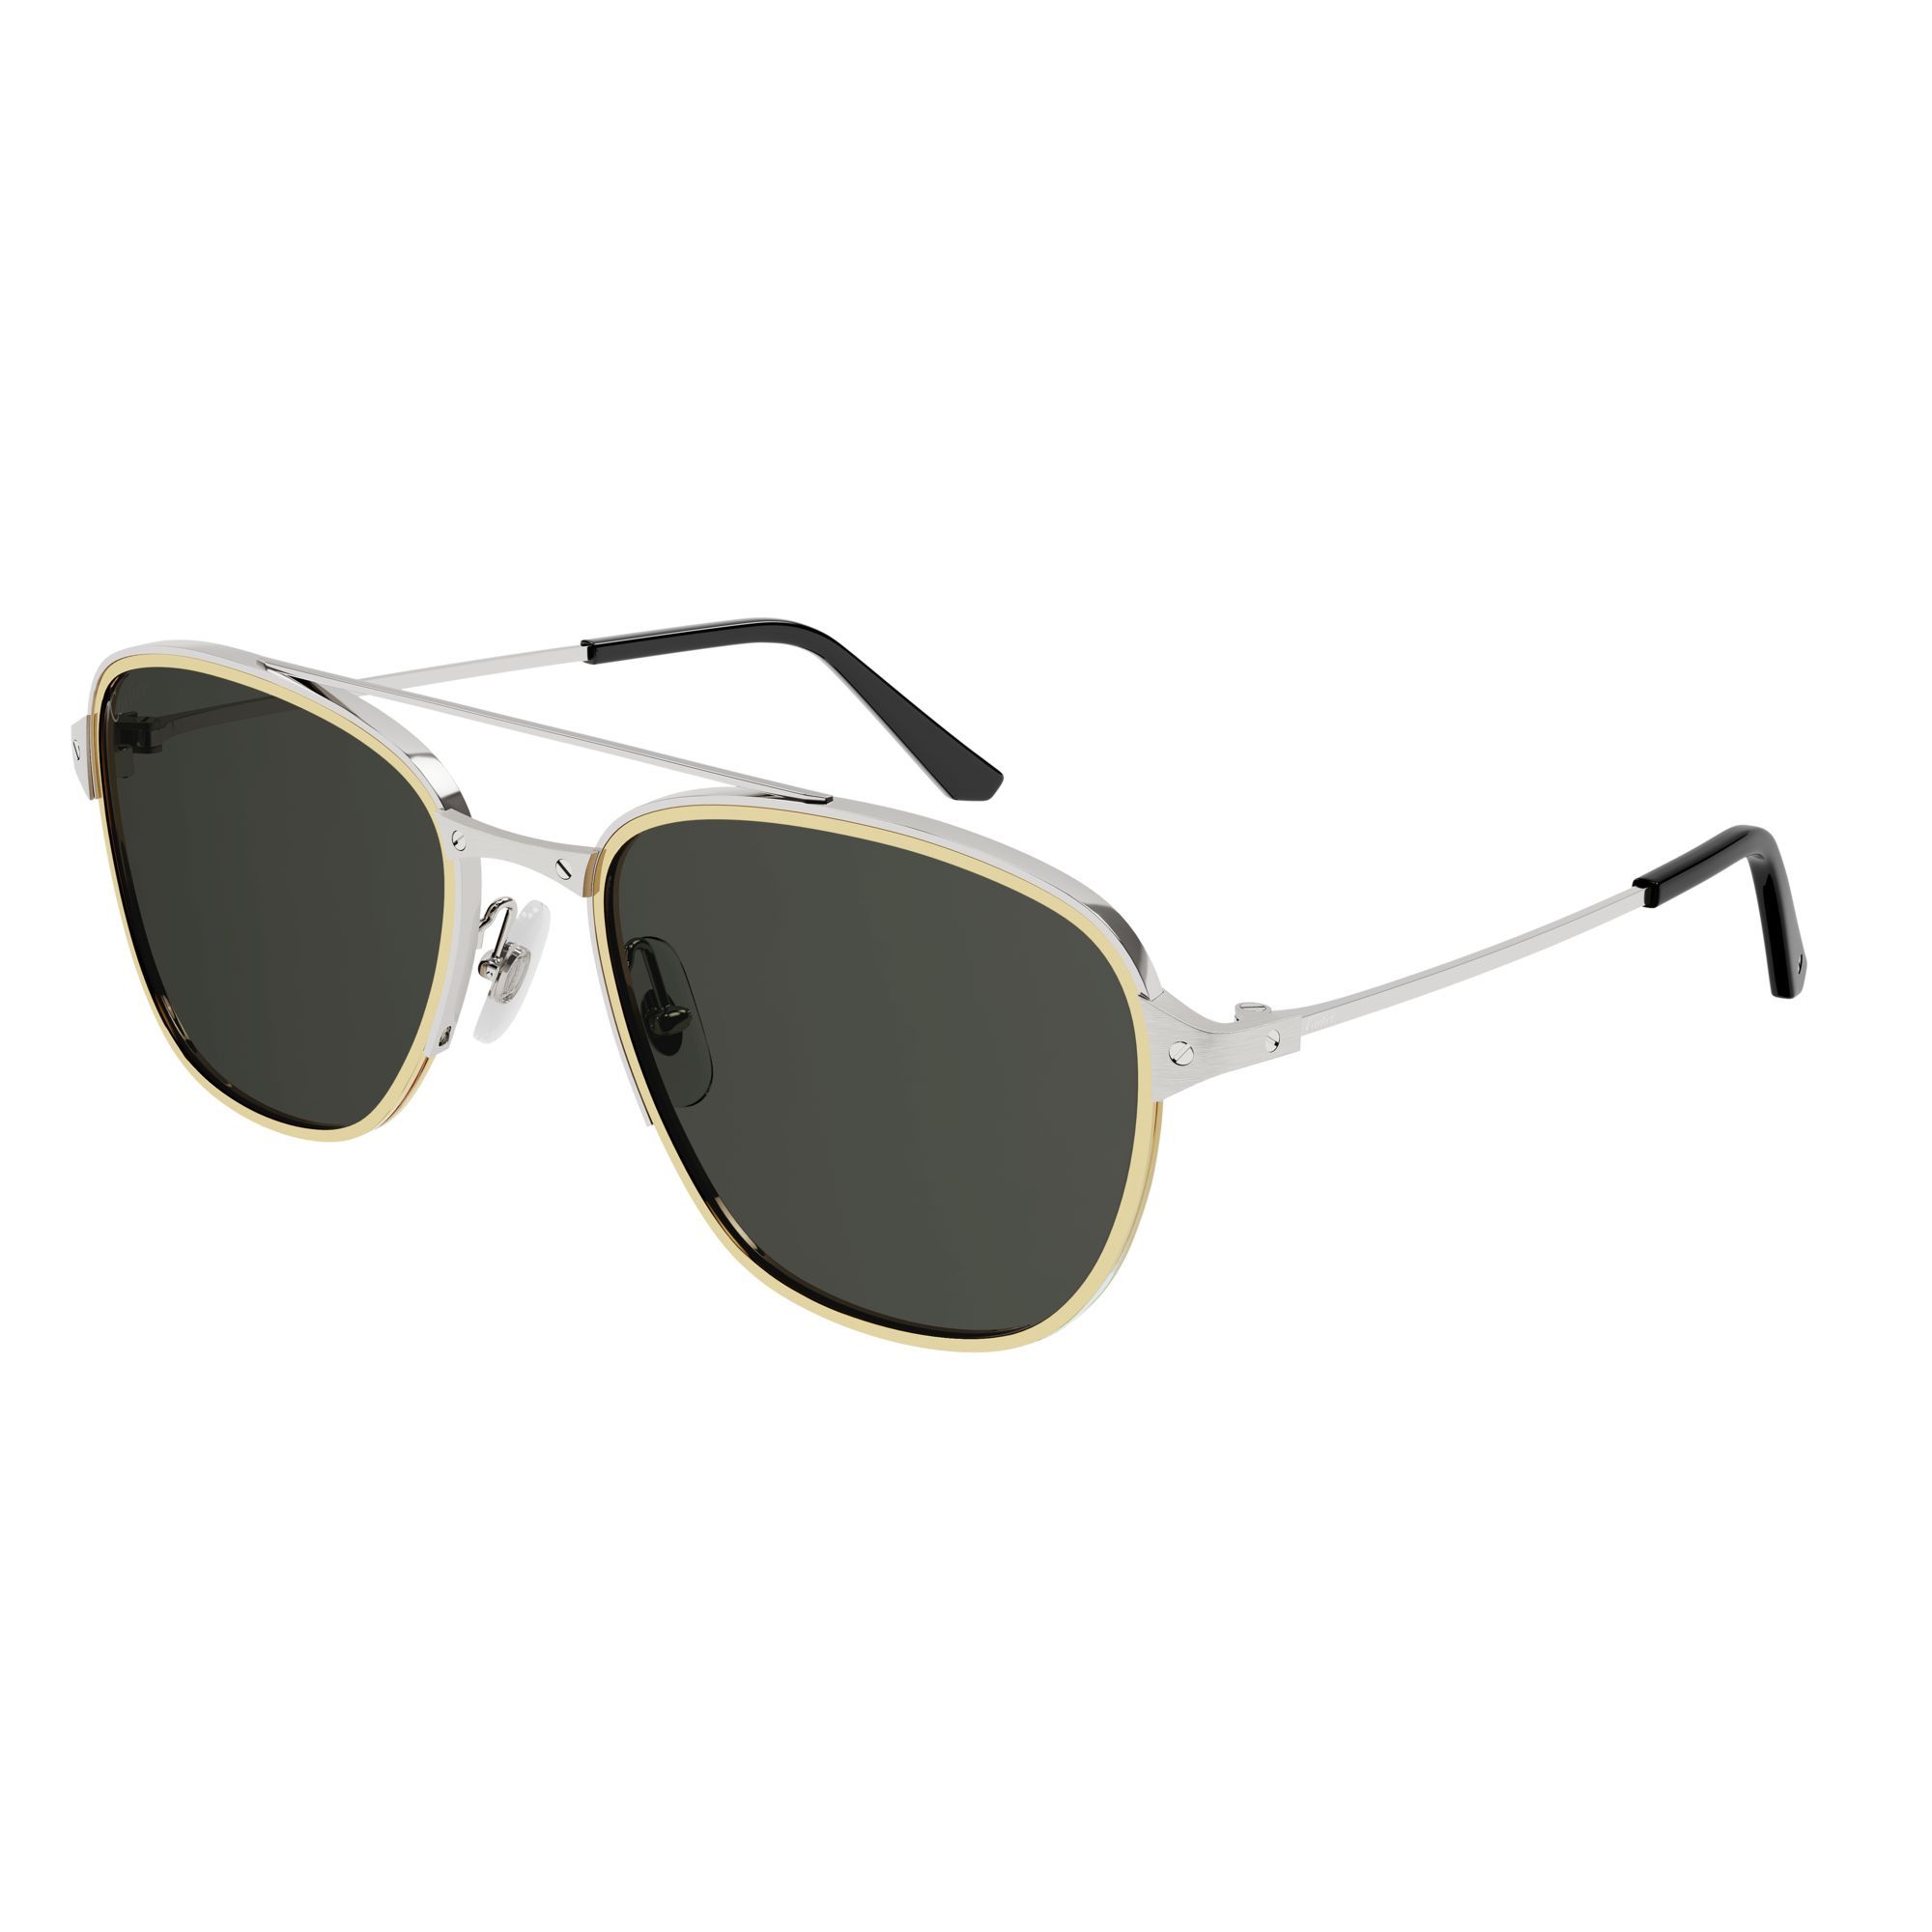 CT0326S Square Sunglasses 1 - size 57